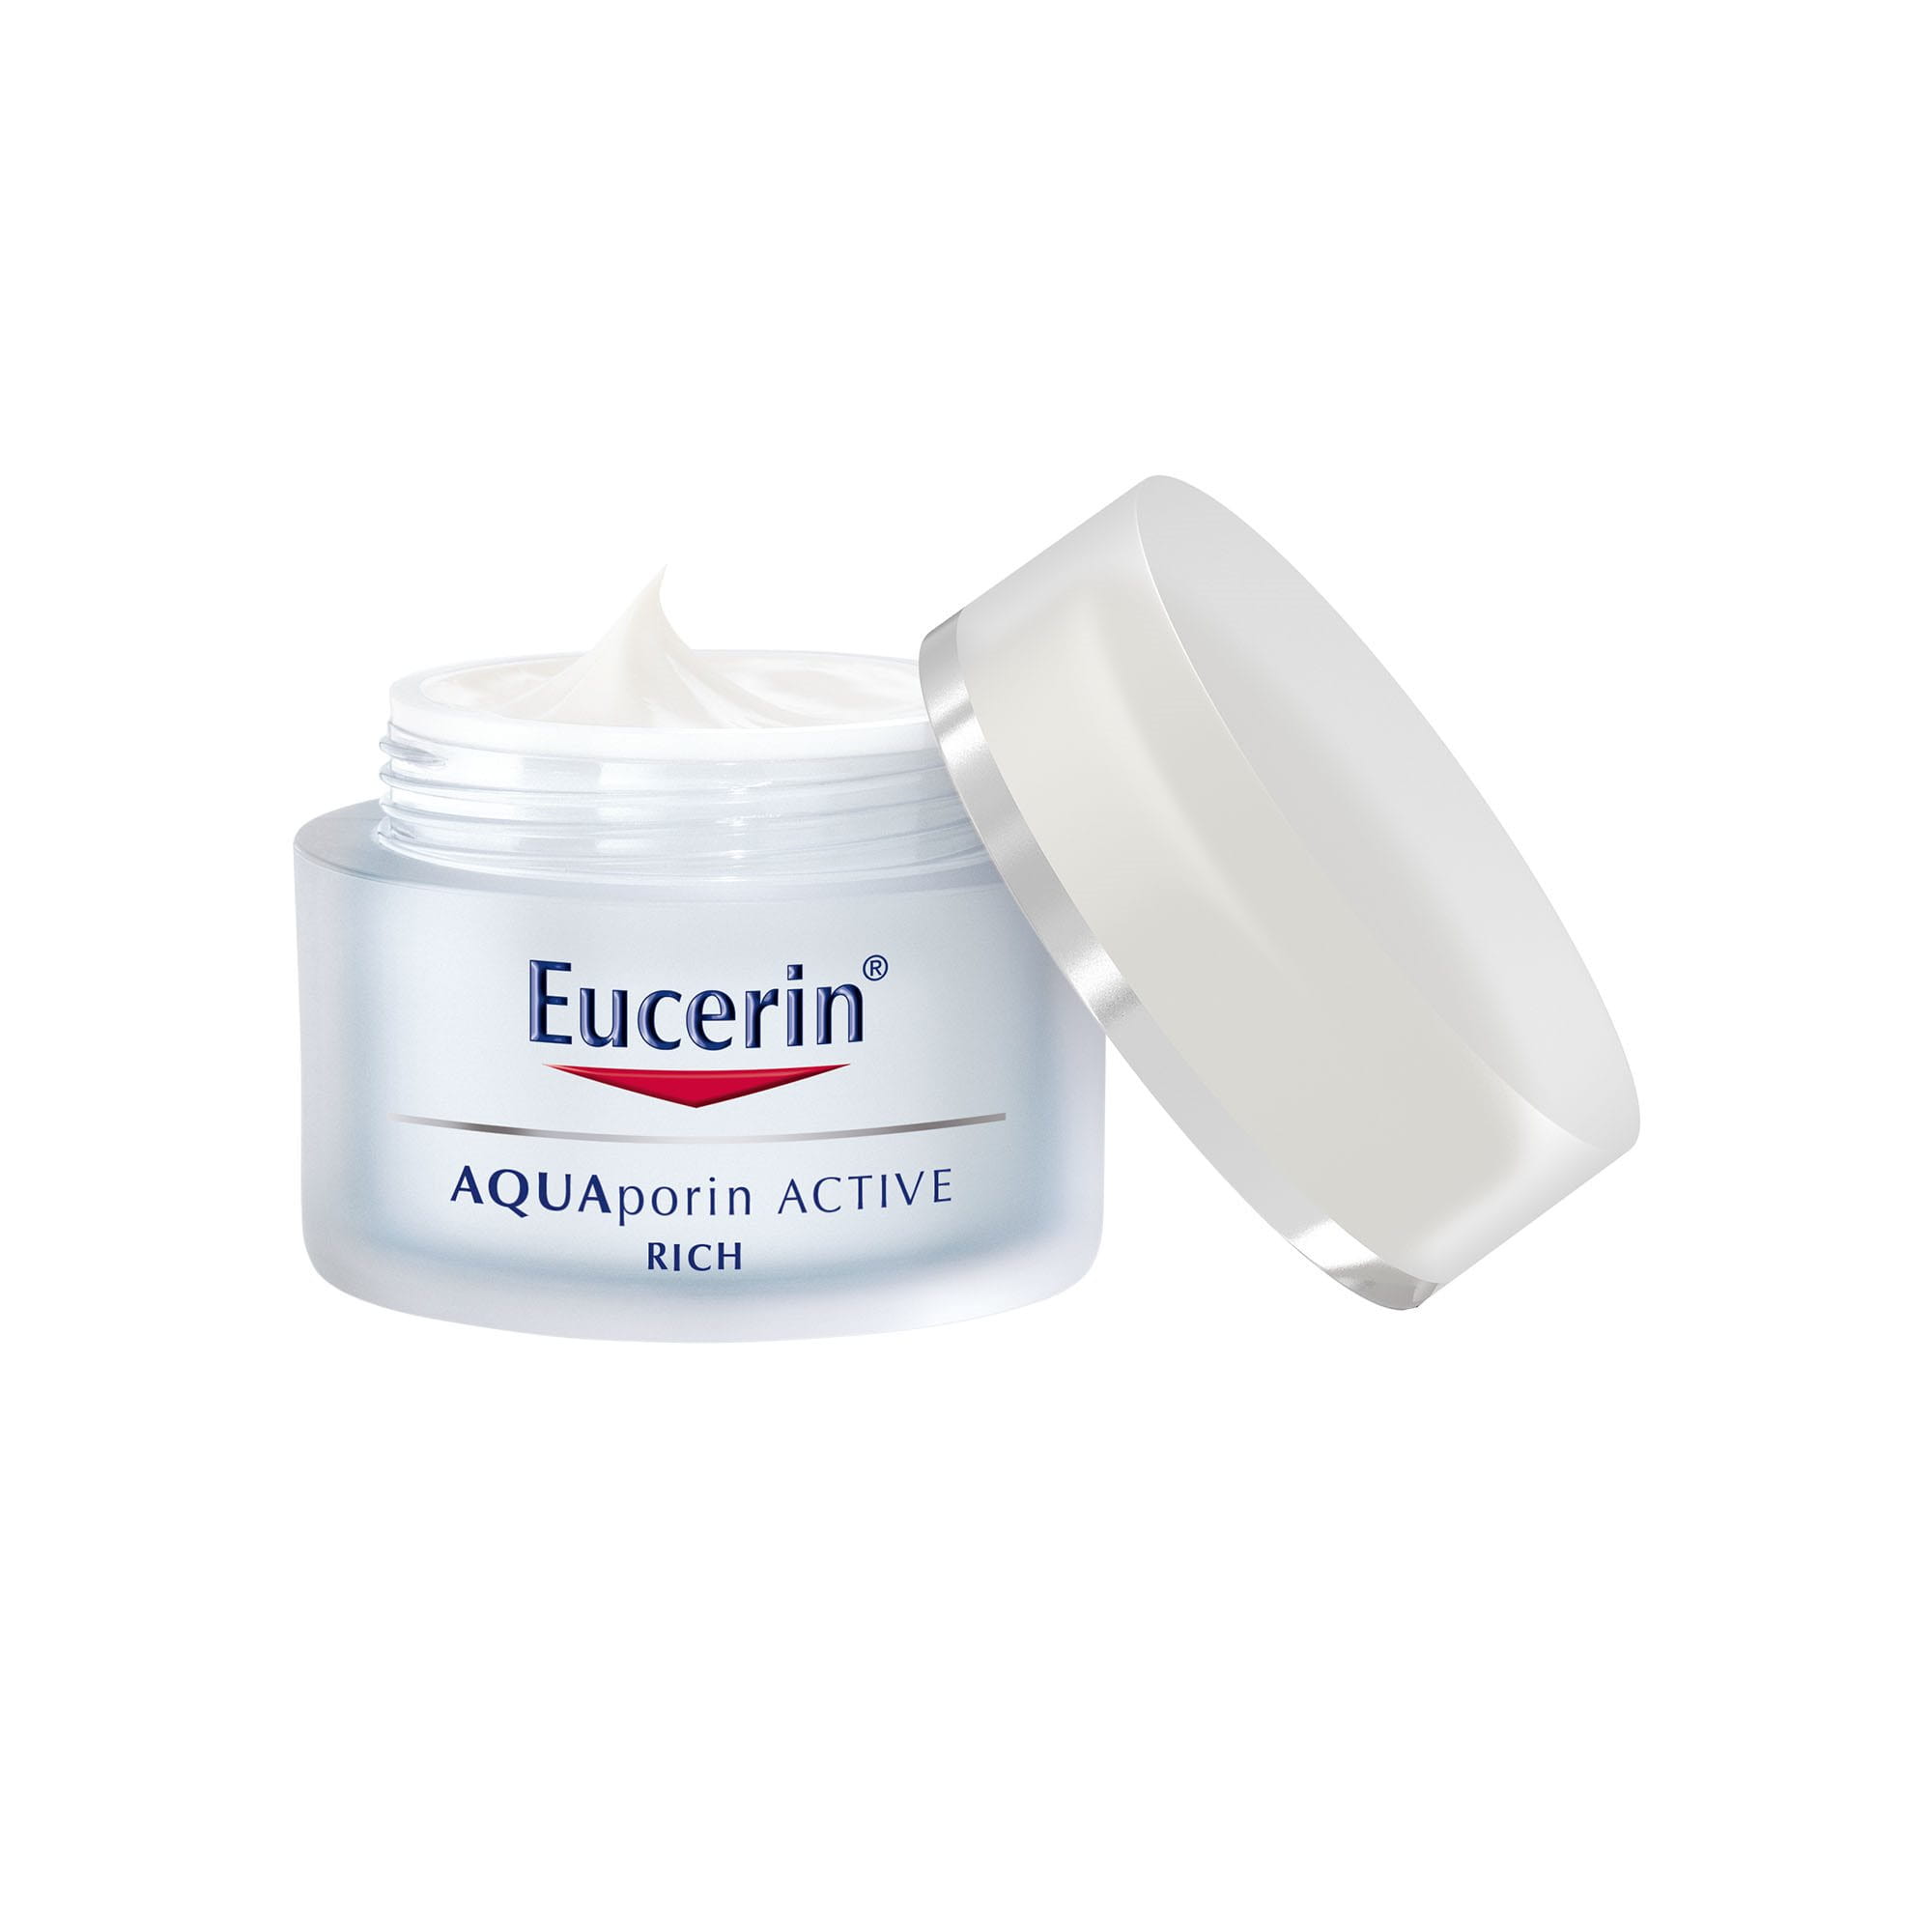 Eucerin AQUAporin ACTIVE per pelli secche